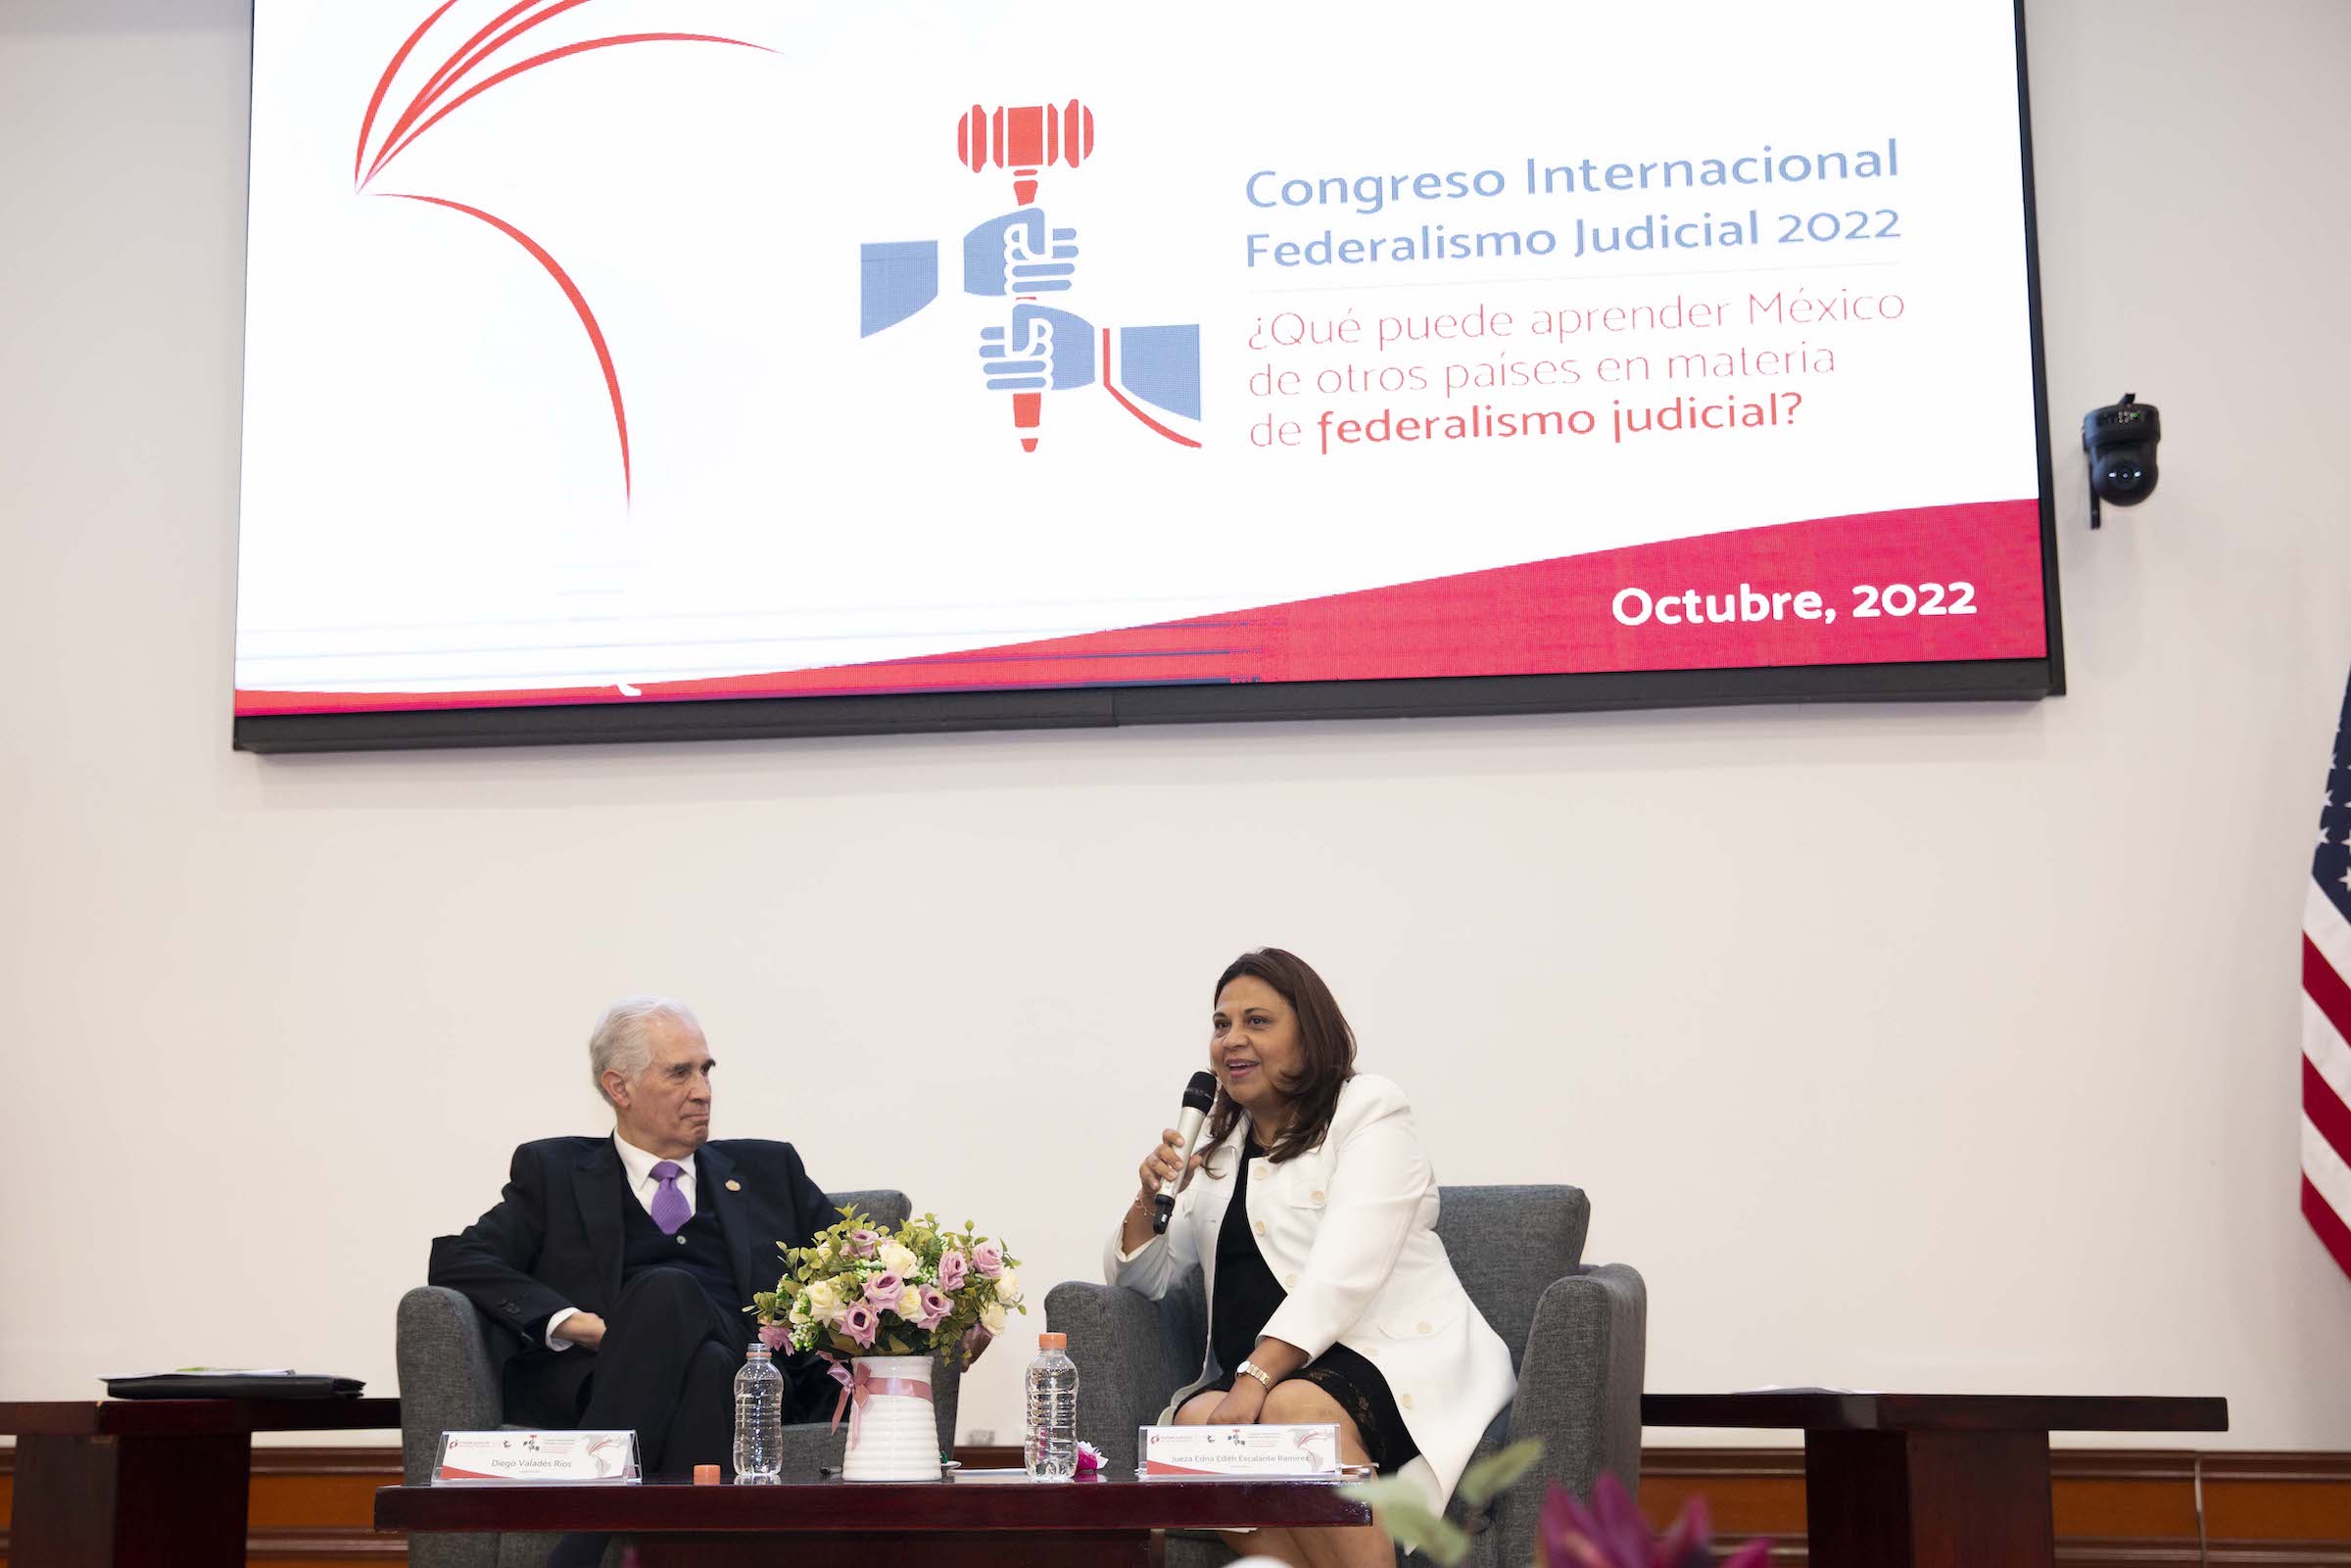 Congreso Internacional Federalismo Judicial